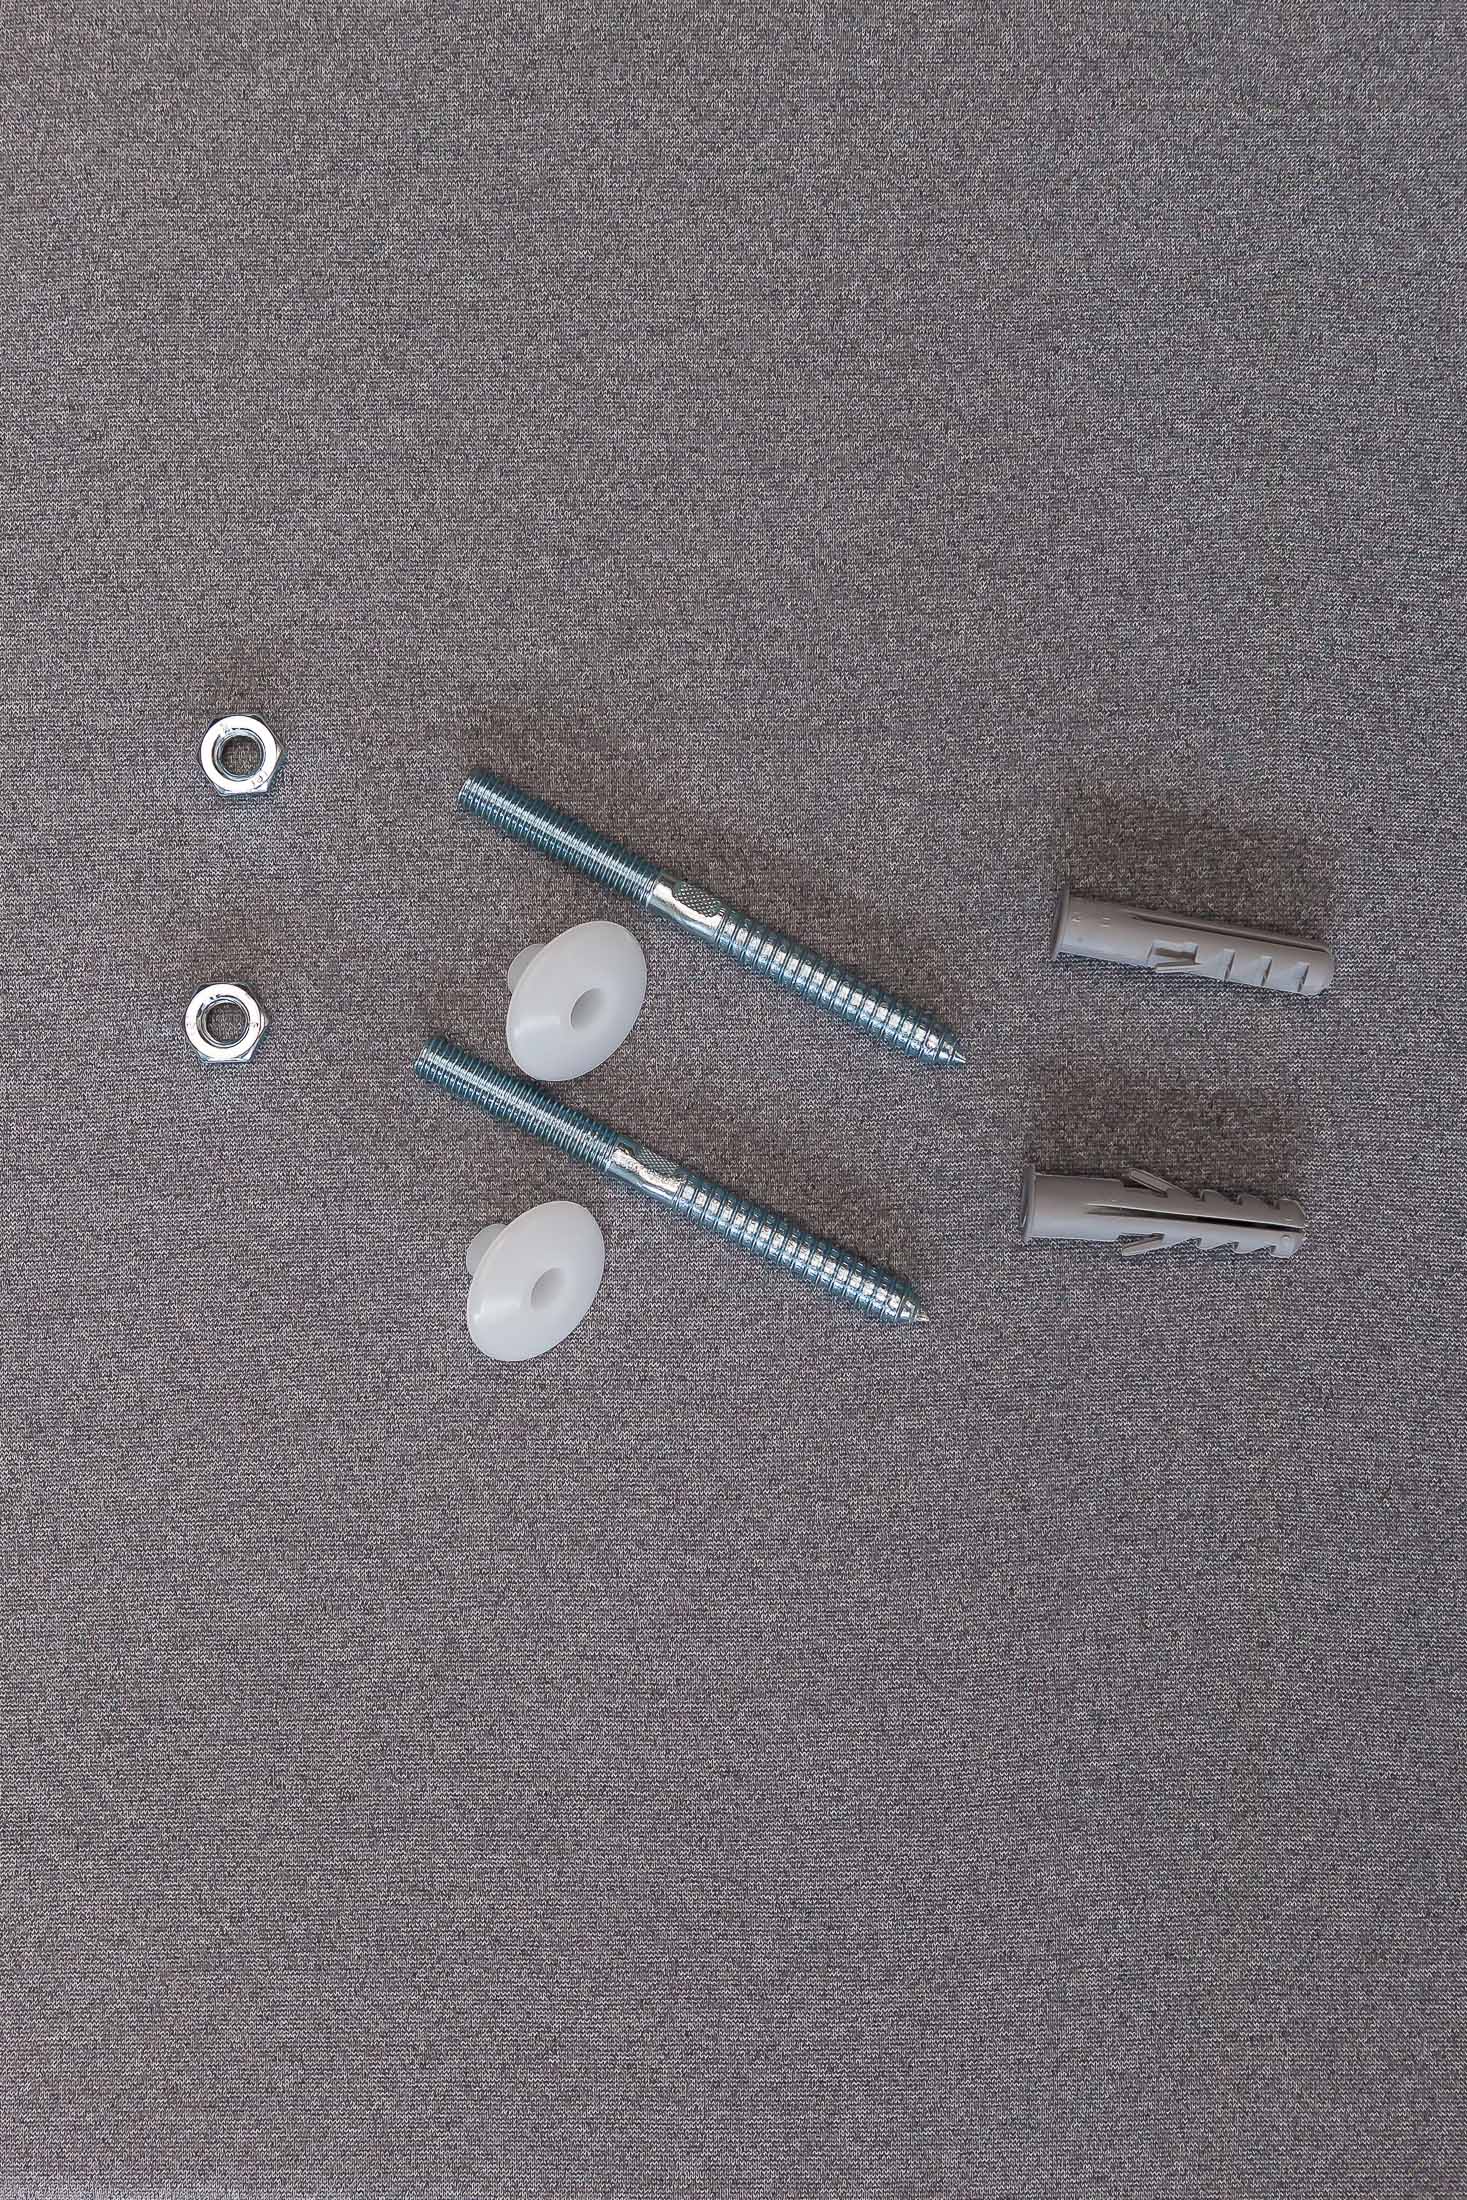 componenti in plastica per fissaggio di chiodi